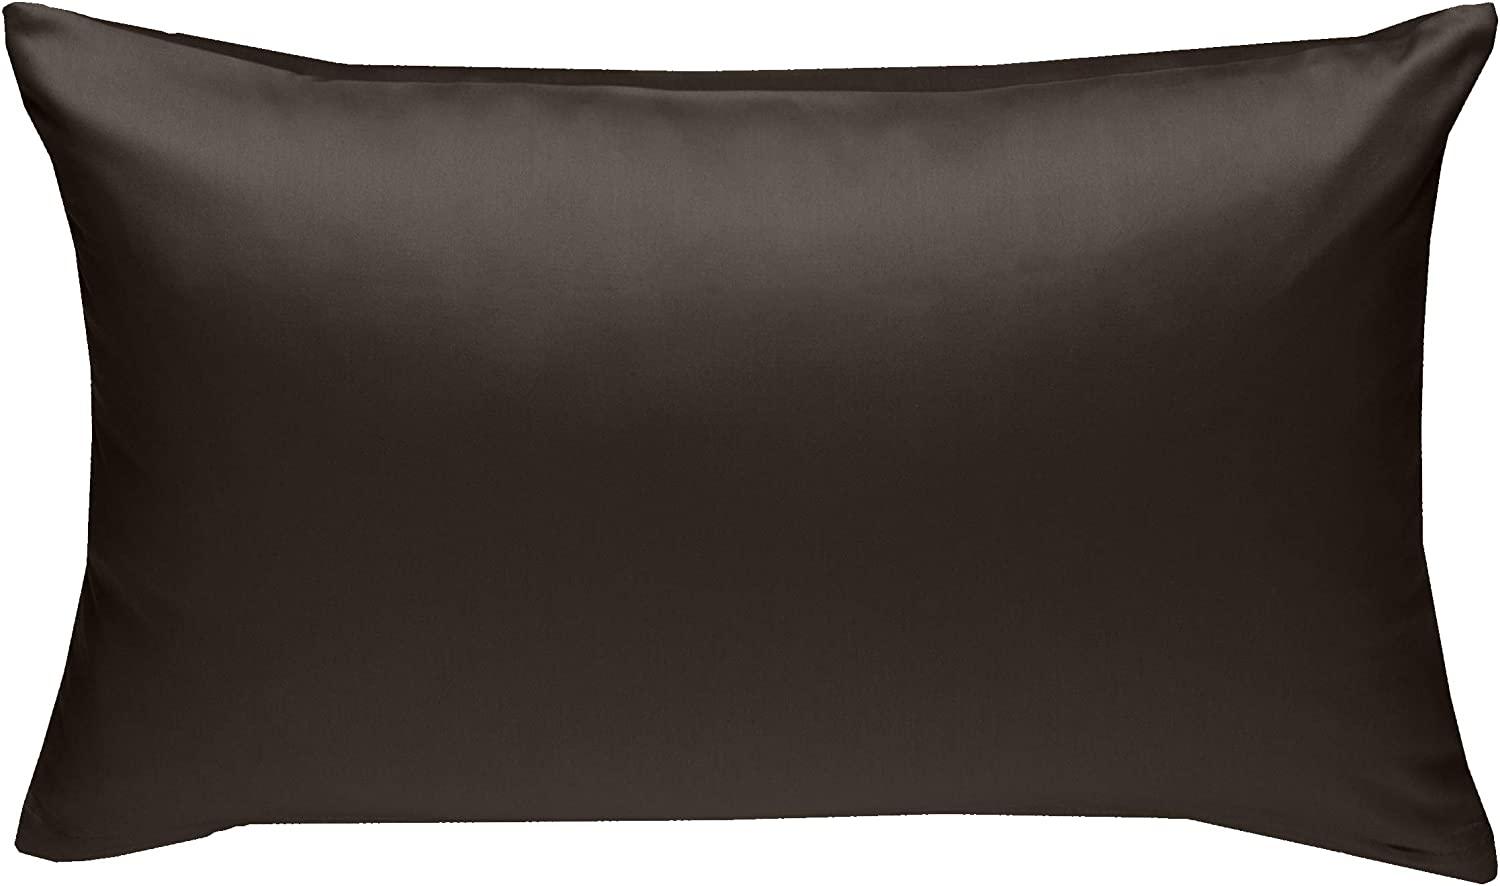 Bettwaesche-mit-Stil Mako-Satin / Baumwollsatin Bettwäsche uni / einfarbig Espresso Braun Kissenbezug 60x80 cm Bild 1